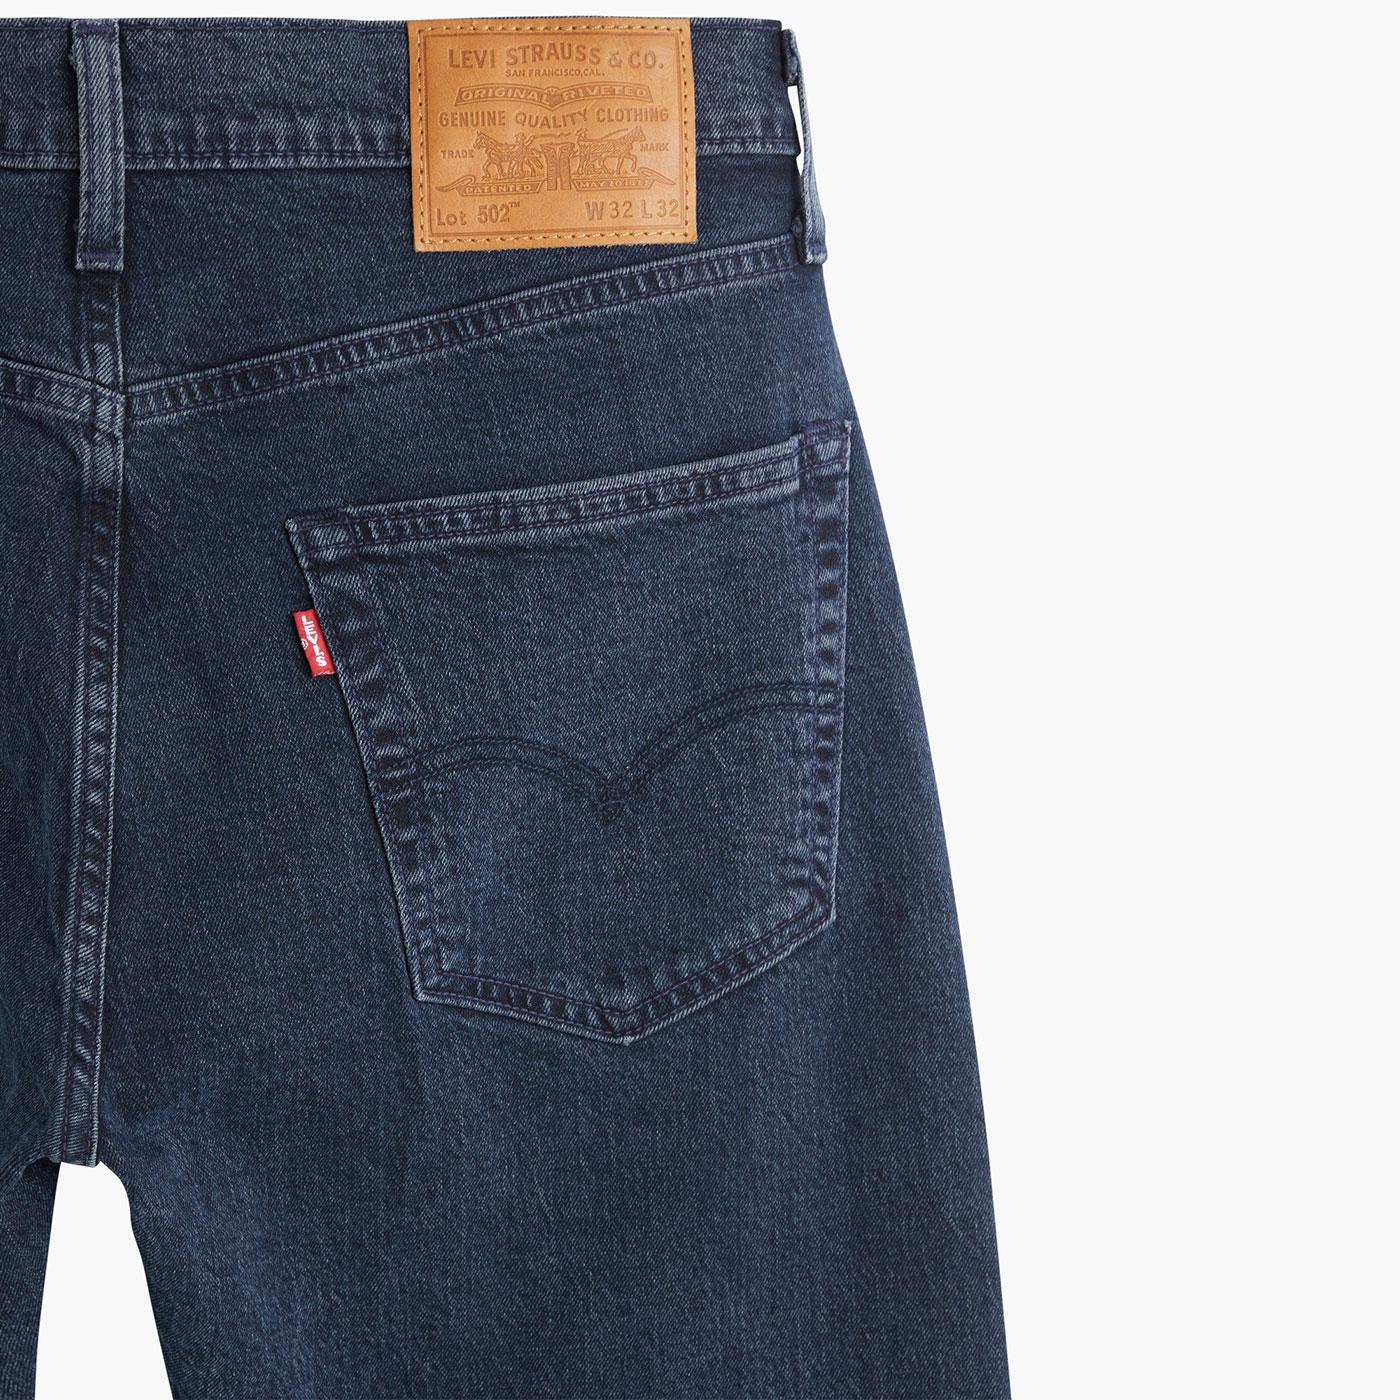 LEVI'S 502 Retro Mod Regular Taper Jeans in Sugar High